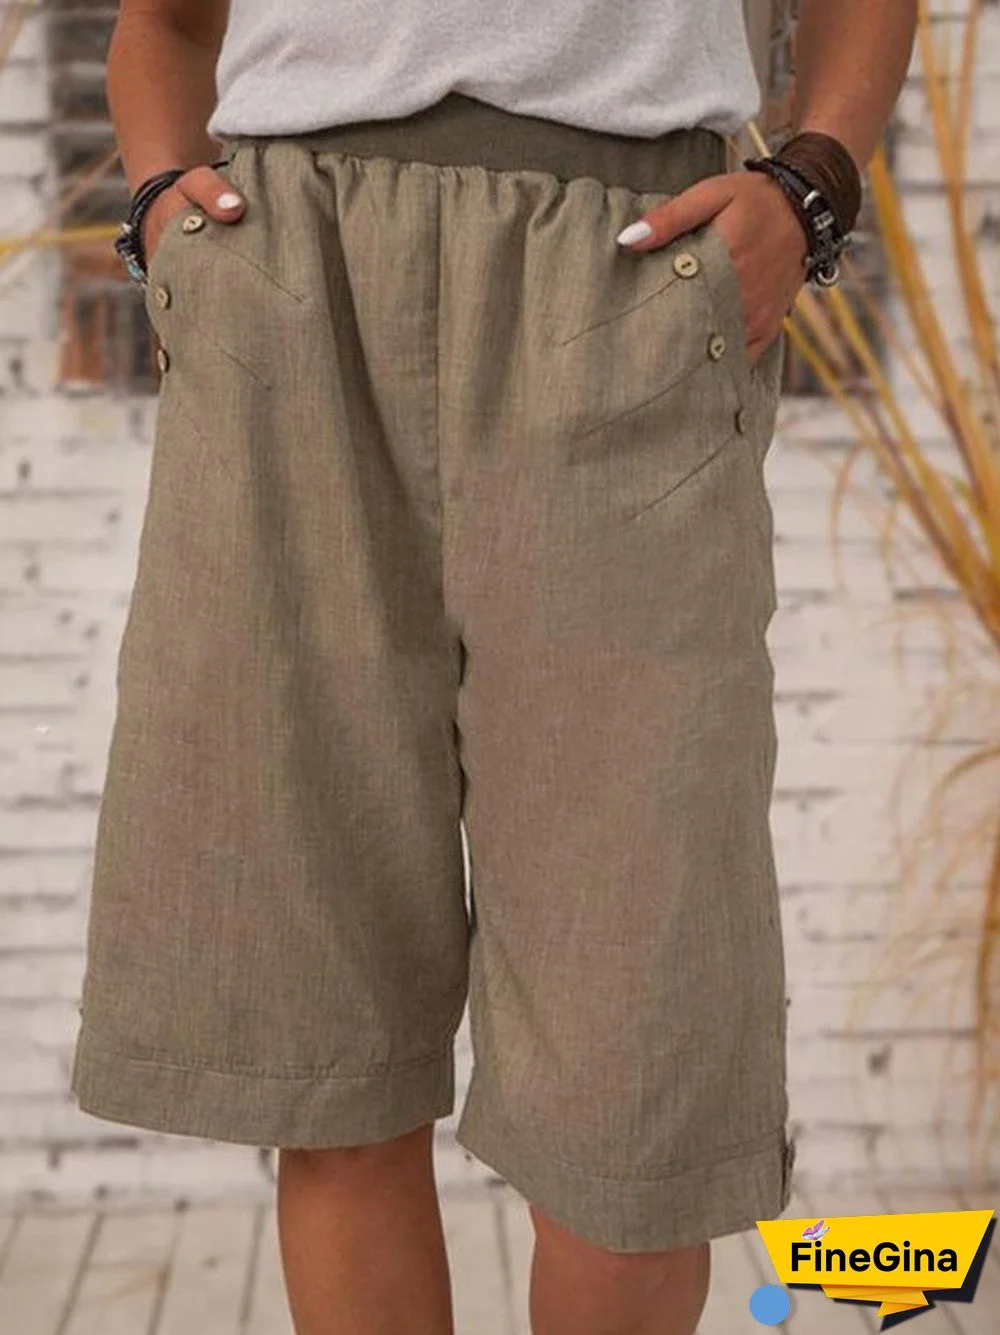 Daily Men Cotton&Linen Fifth Pants